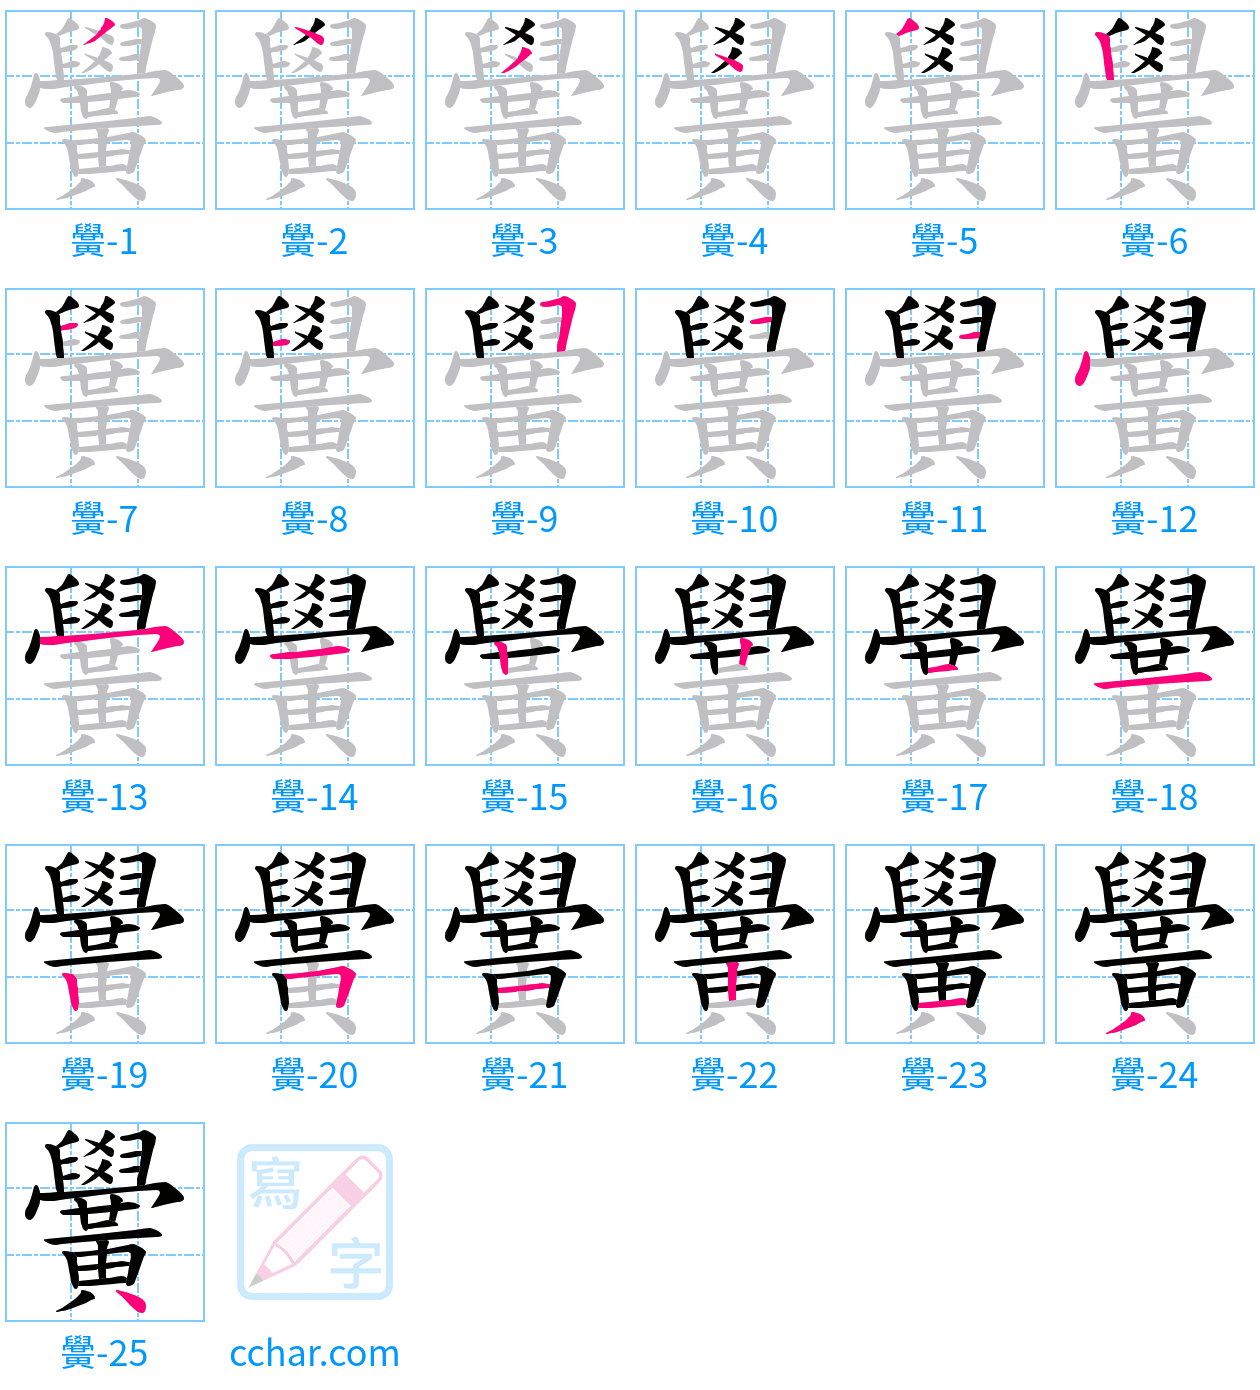 黌 stroke order step-by-step diagram